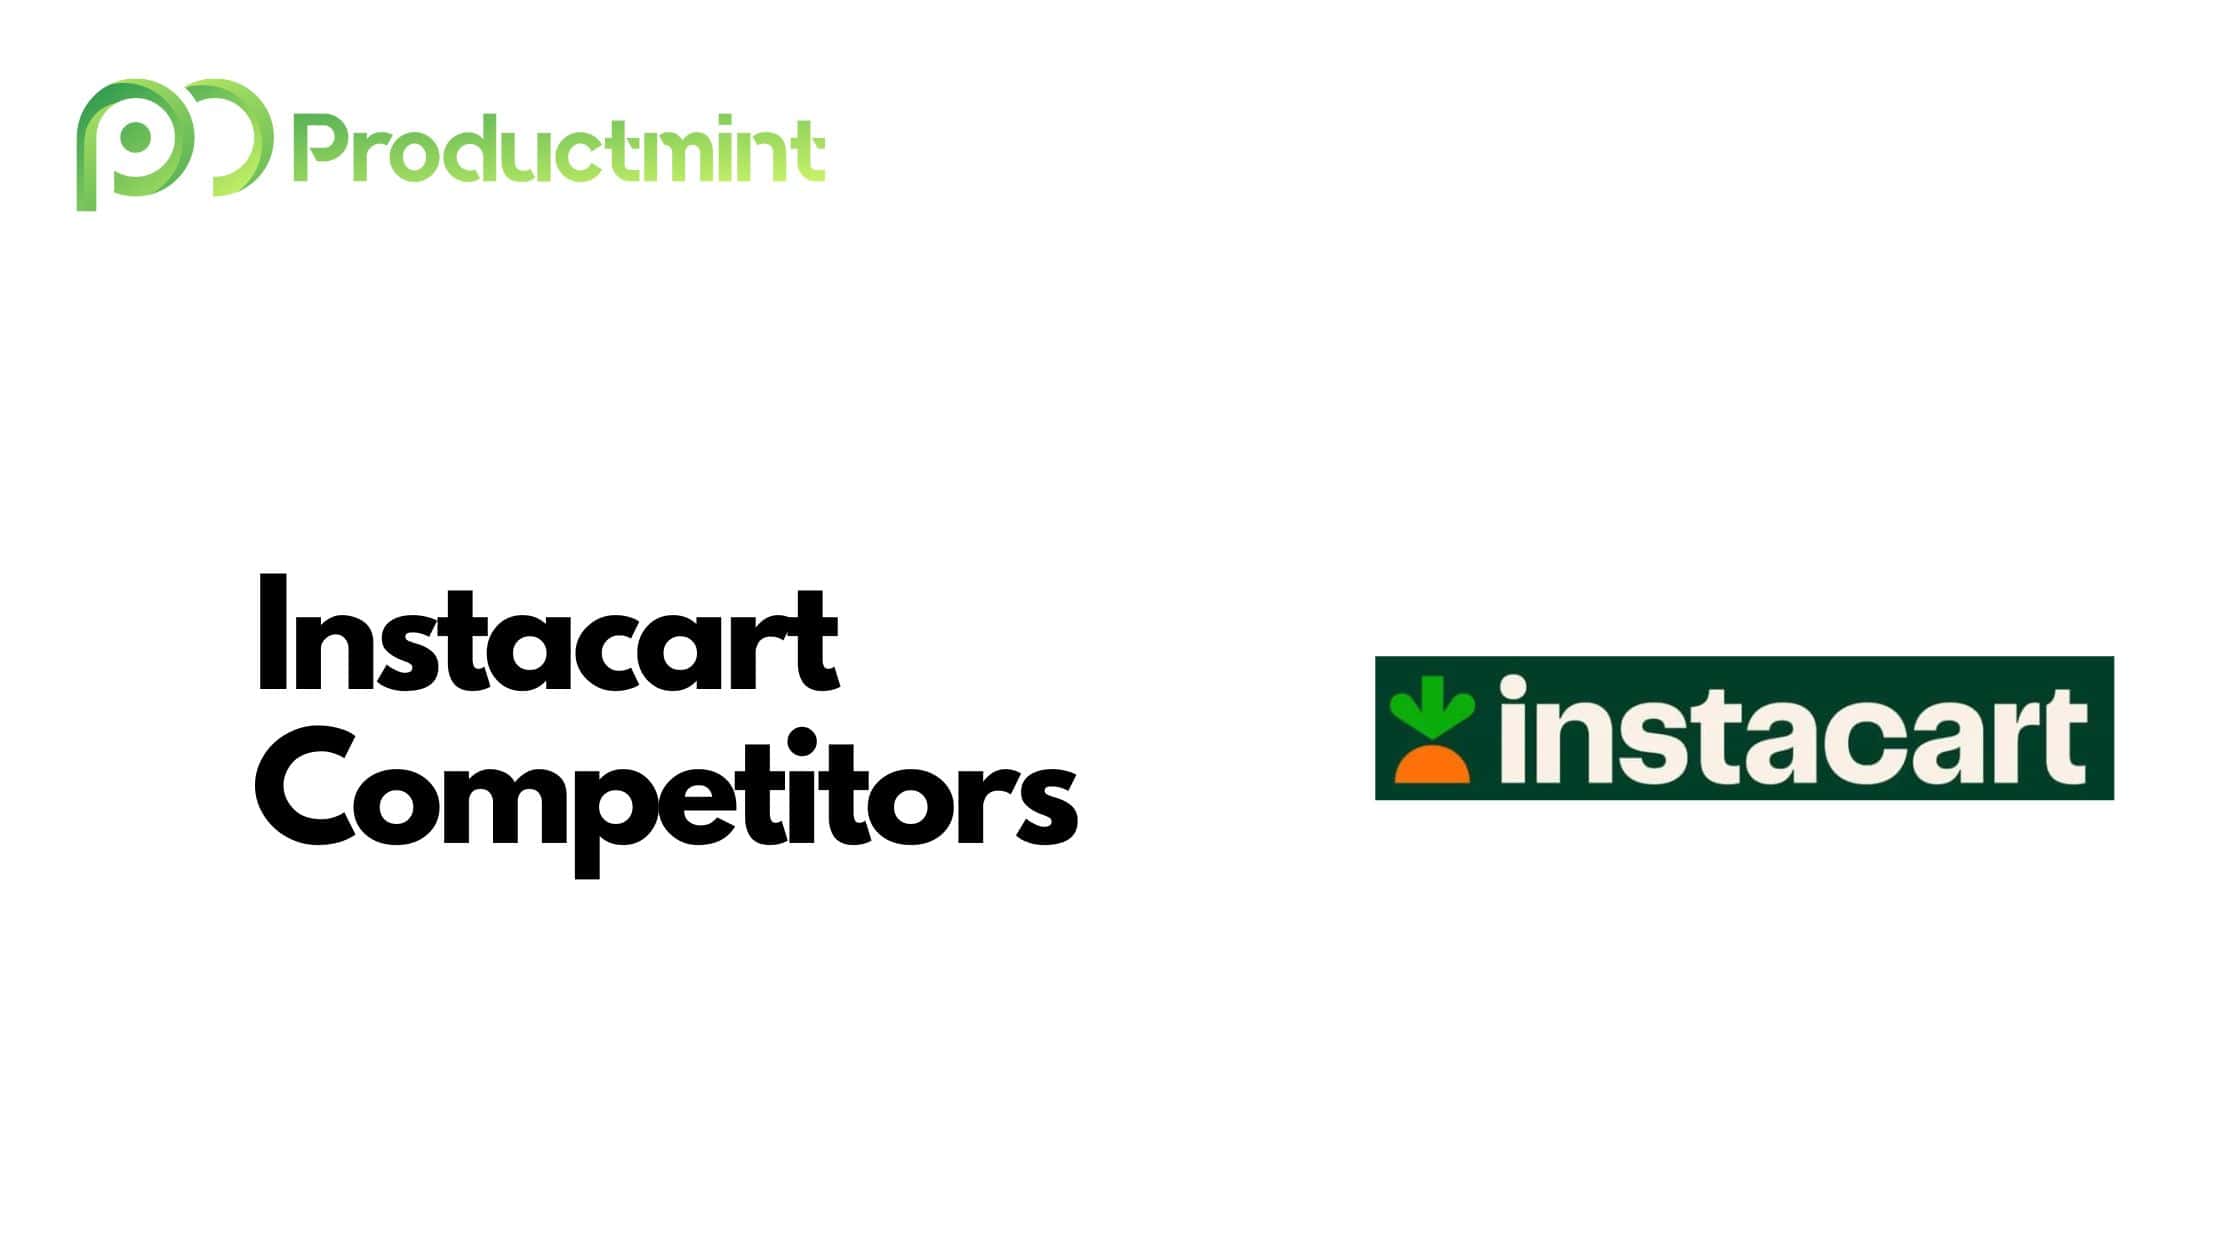 Instacart Competitors